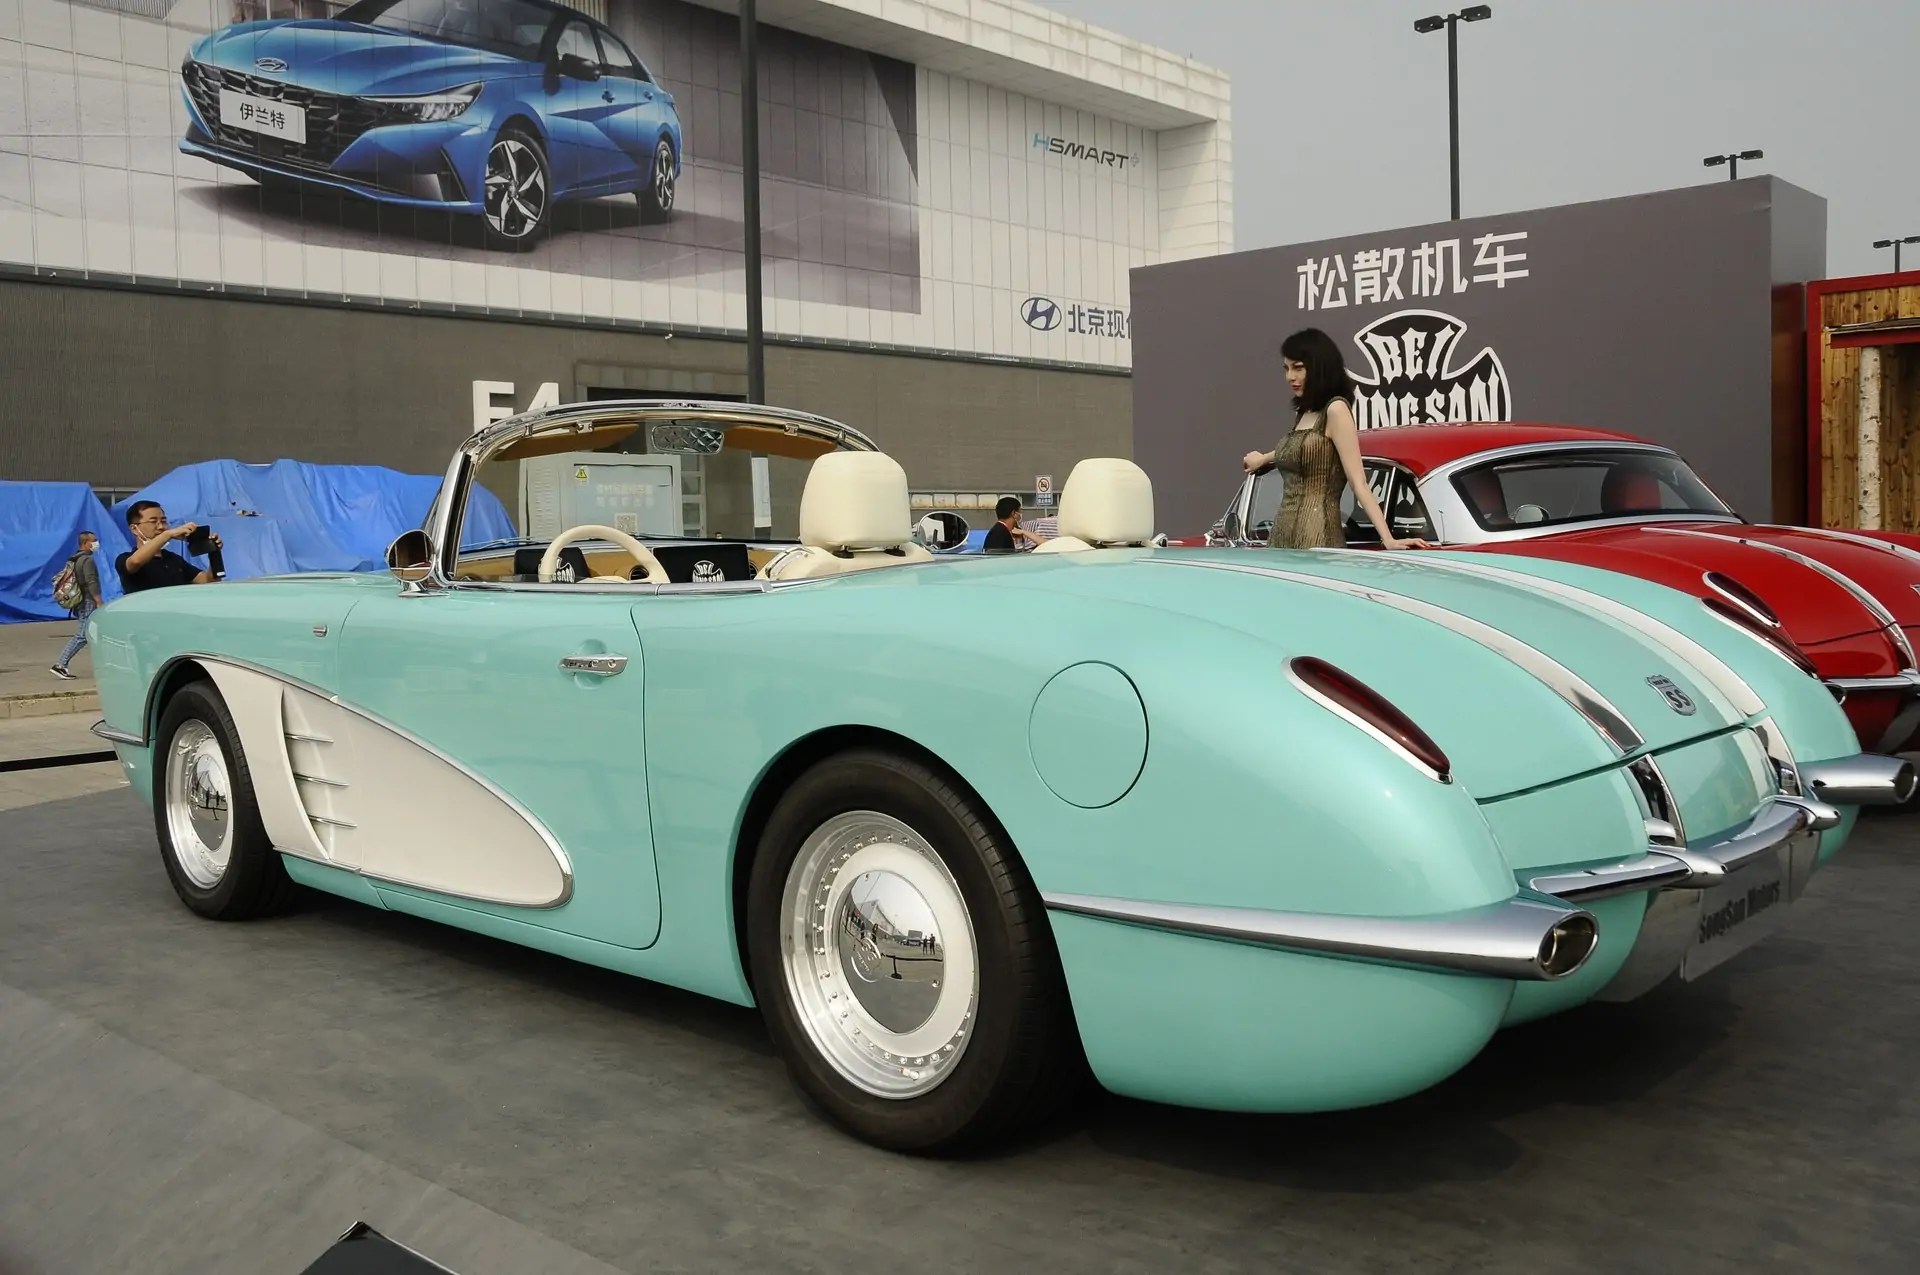 شركة صينيه تستنسخ كورفيت C1 1958 وتسوقها بمعرض بكين